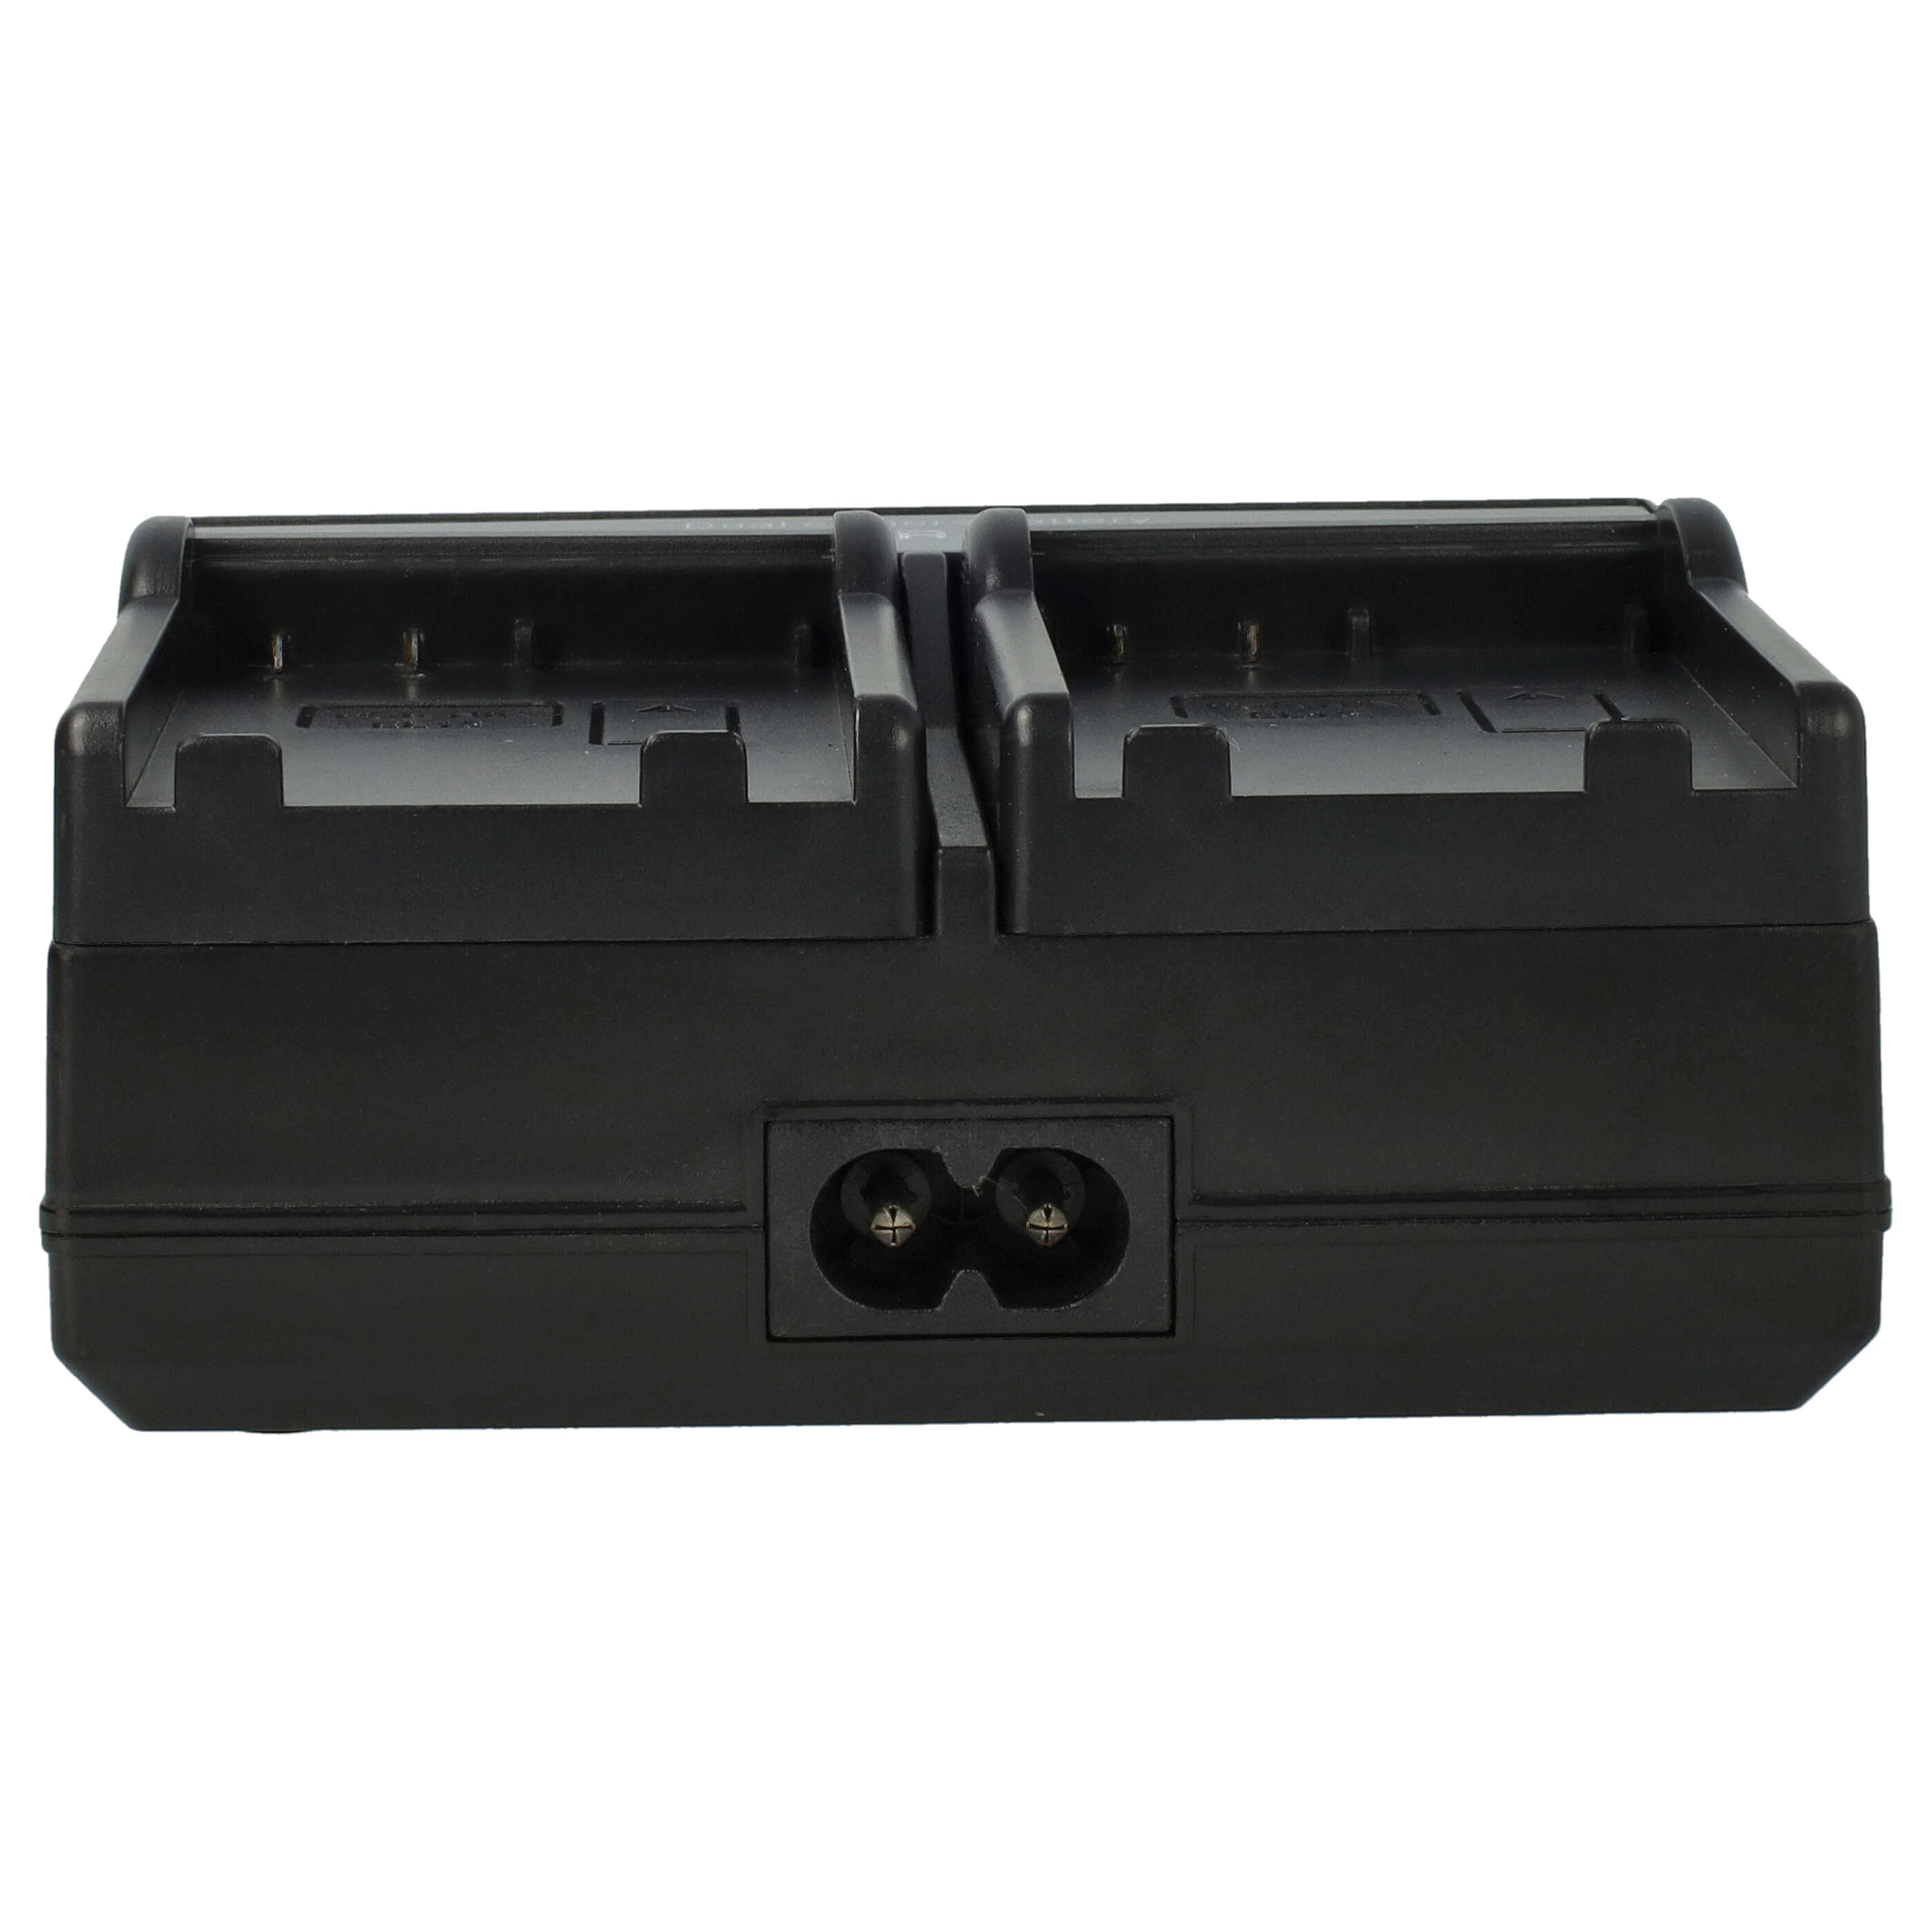 Caricabatterie + adattatore da auto per fotocamera Coolpix - 0.5 / 0.9A 4.2/8.4V 114,5cm